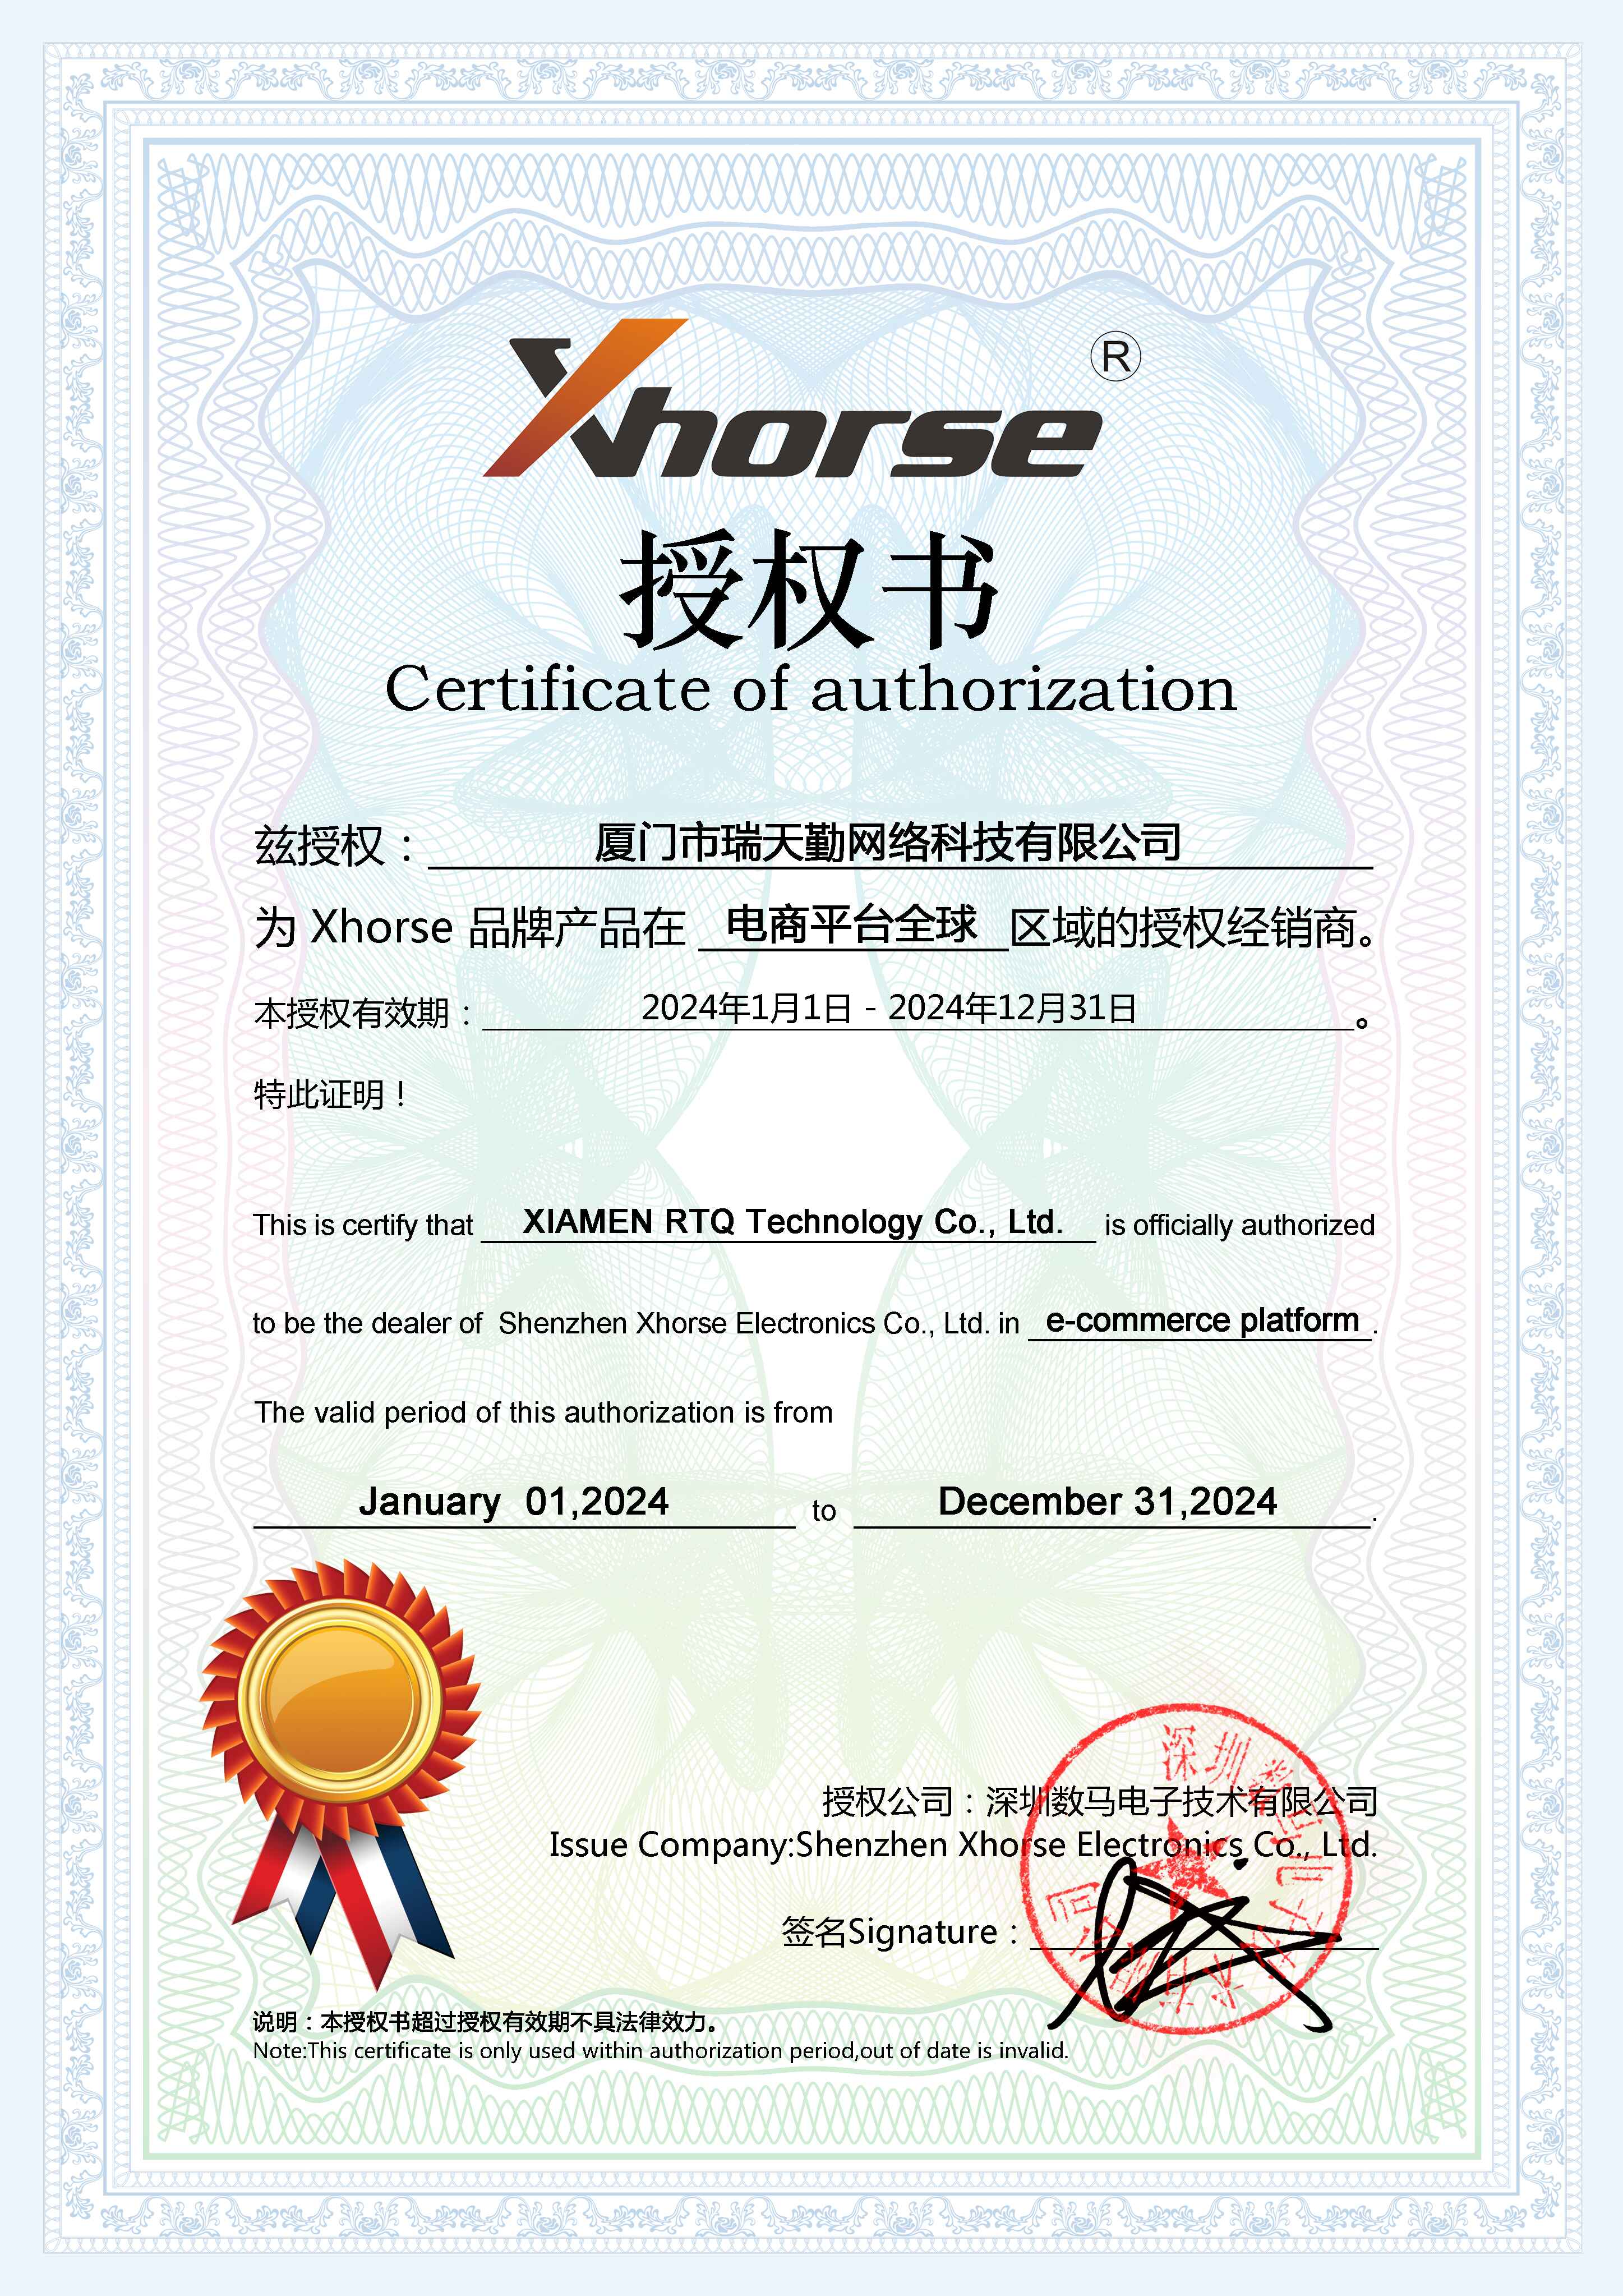 xhorse certificate